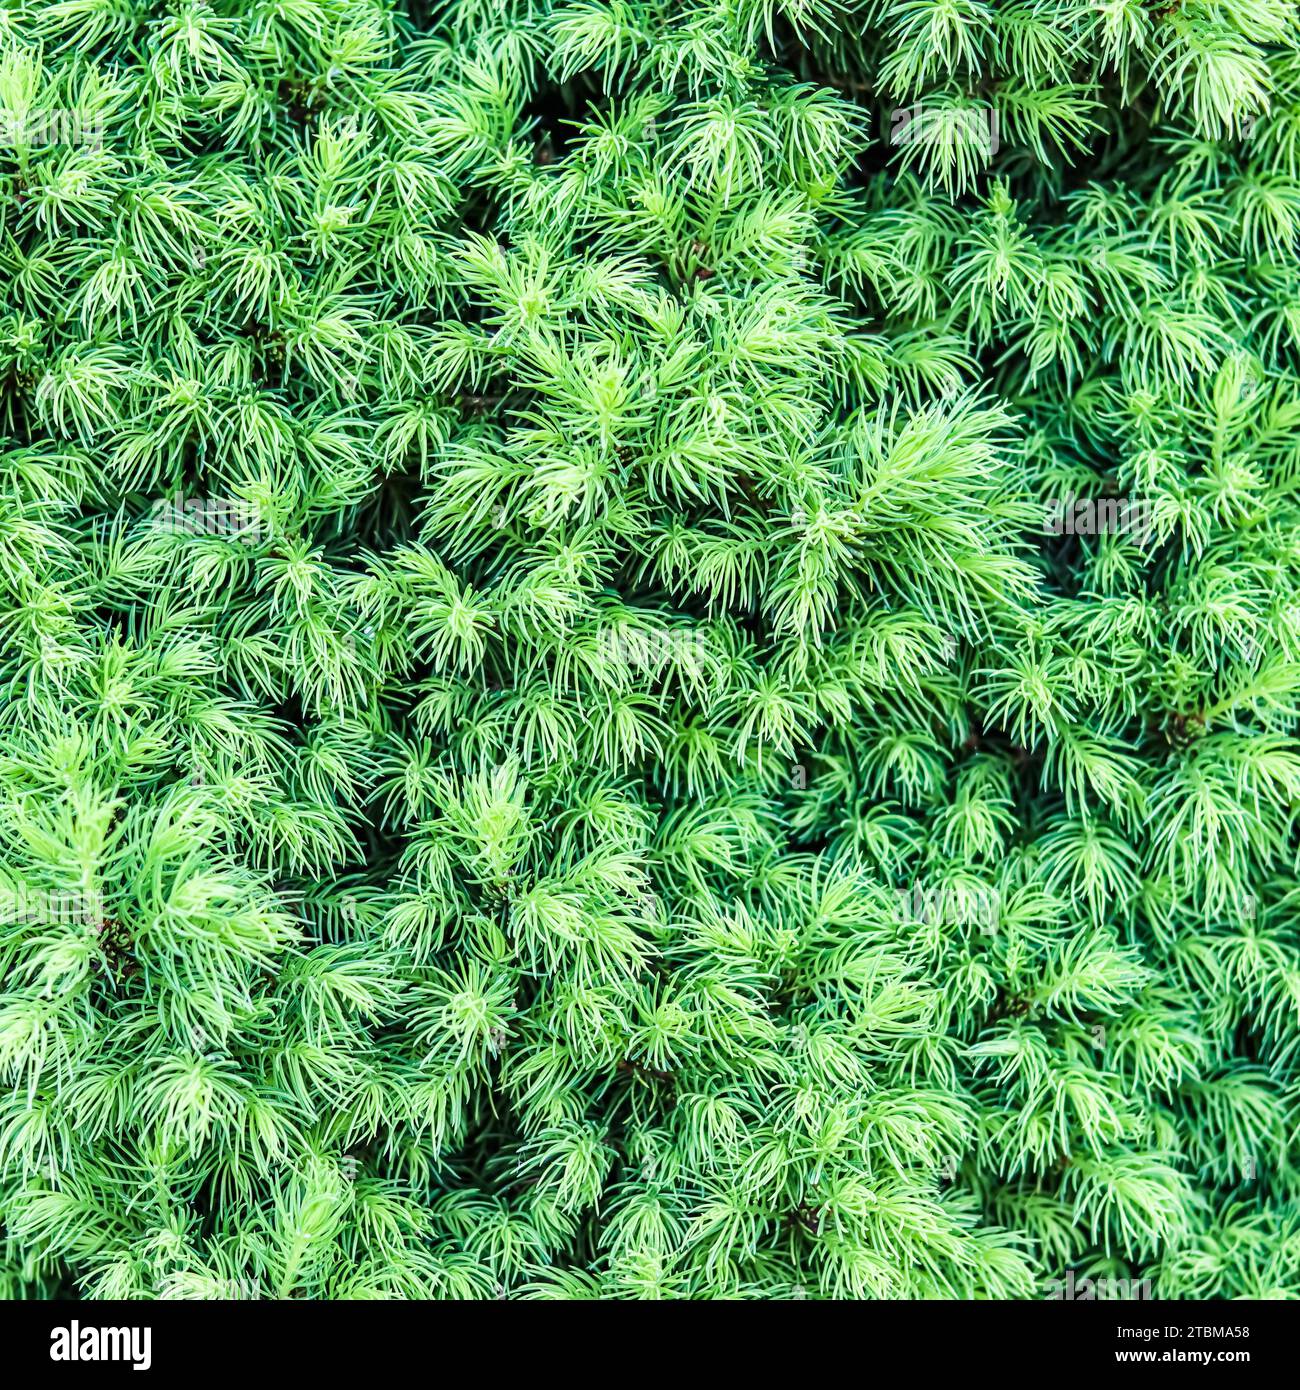 Contexte des pousses d'épinette canadienne (Picea) glauca CONICA au printemps. Épinette blanche. Arbre conifère décoratif à feuilles persistantes Banque D'Images